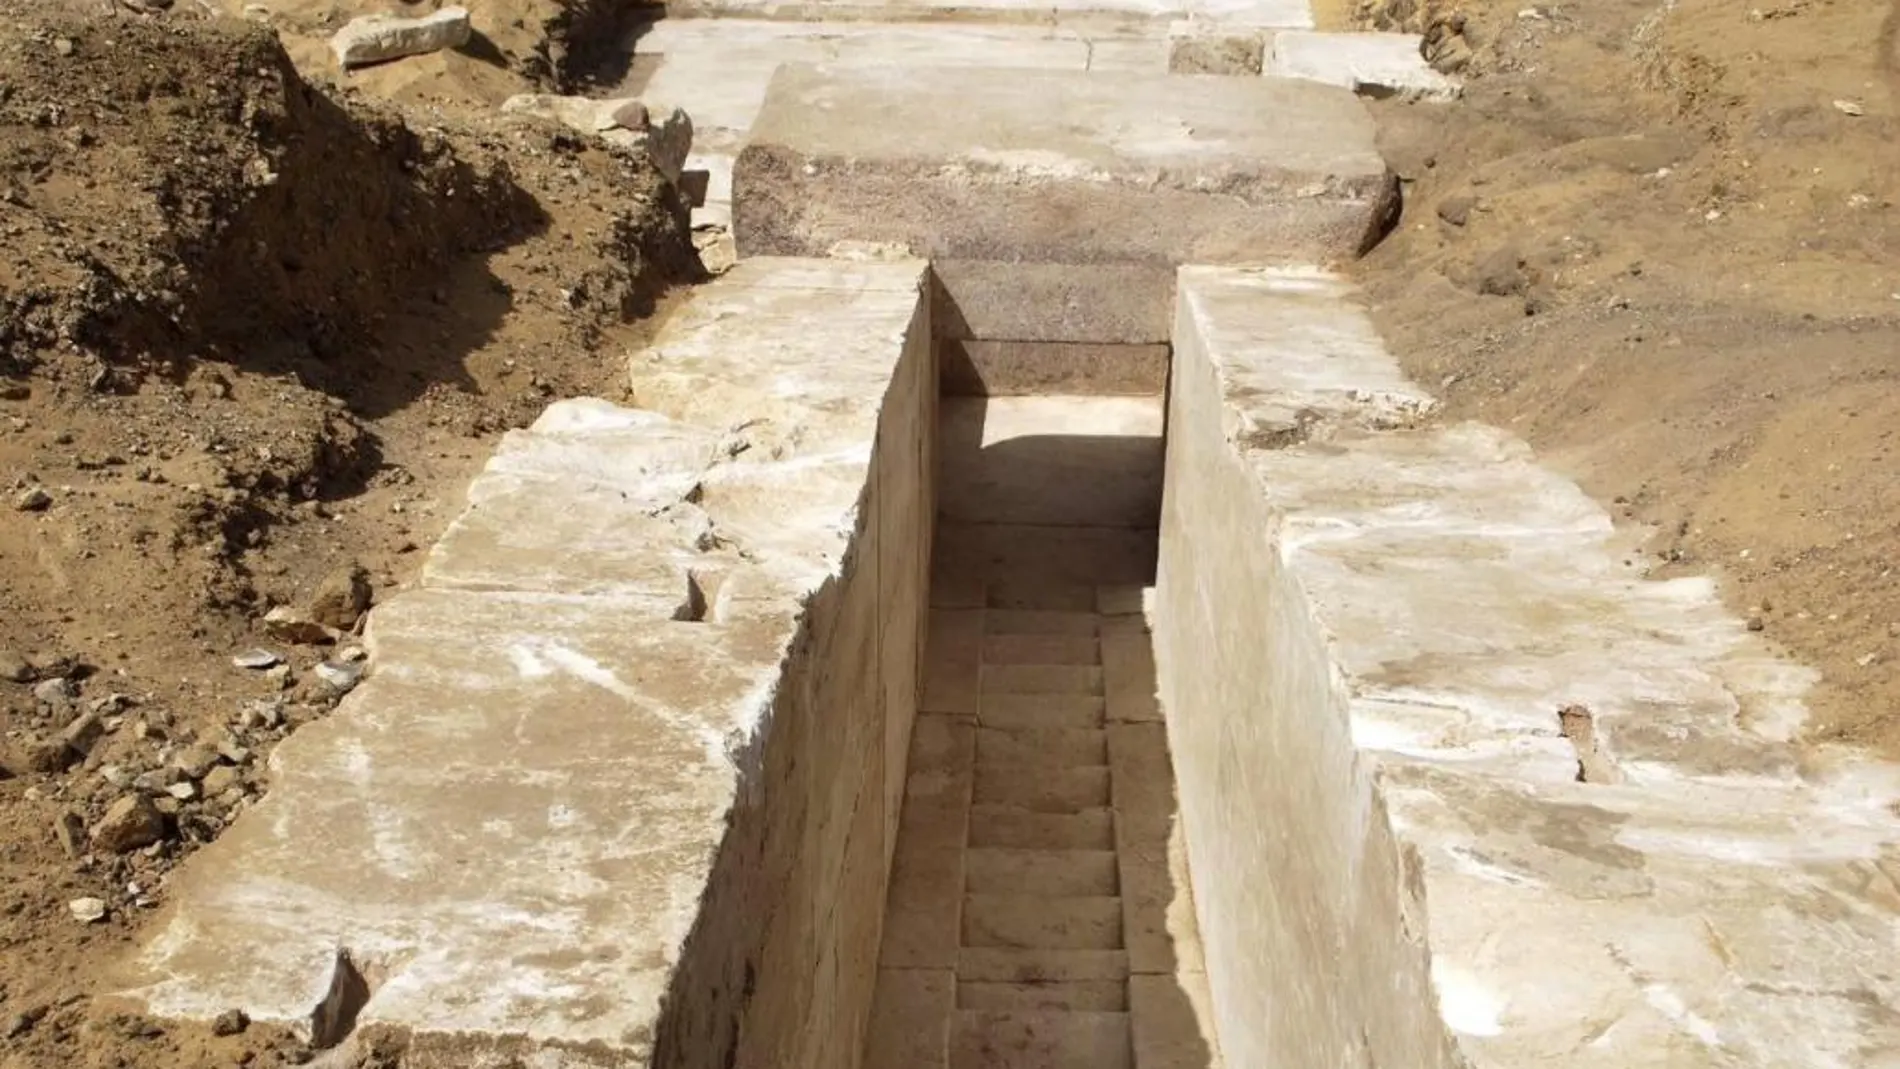 Vista general de los restos arqueológicos descubiertos en la zona norte de la pirámides del rey Seneferu